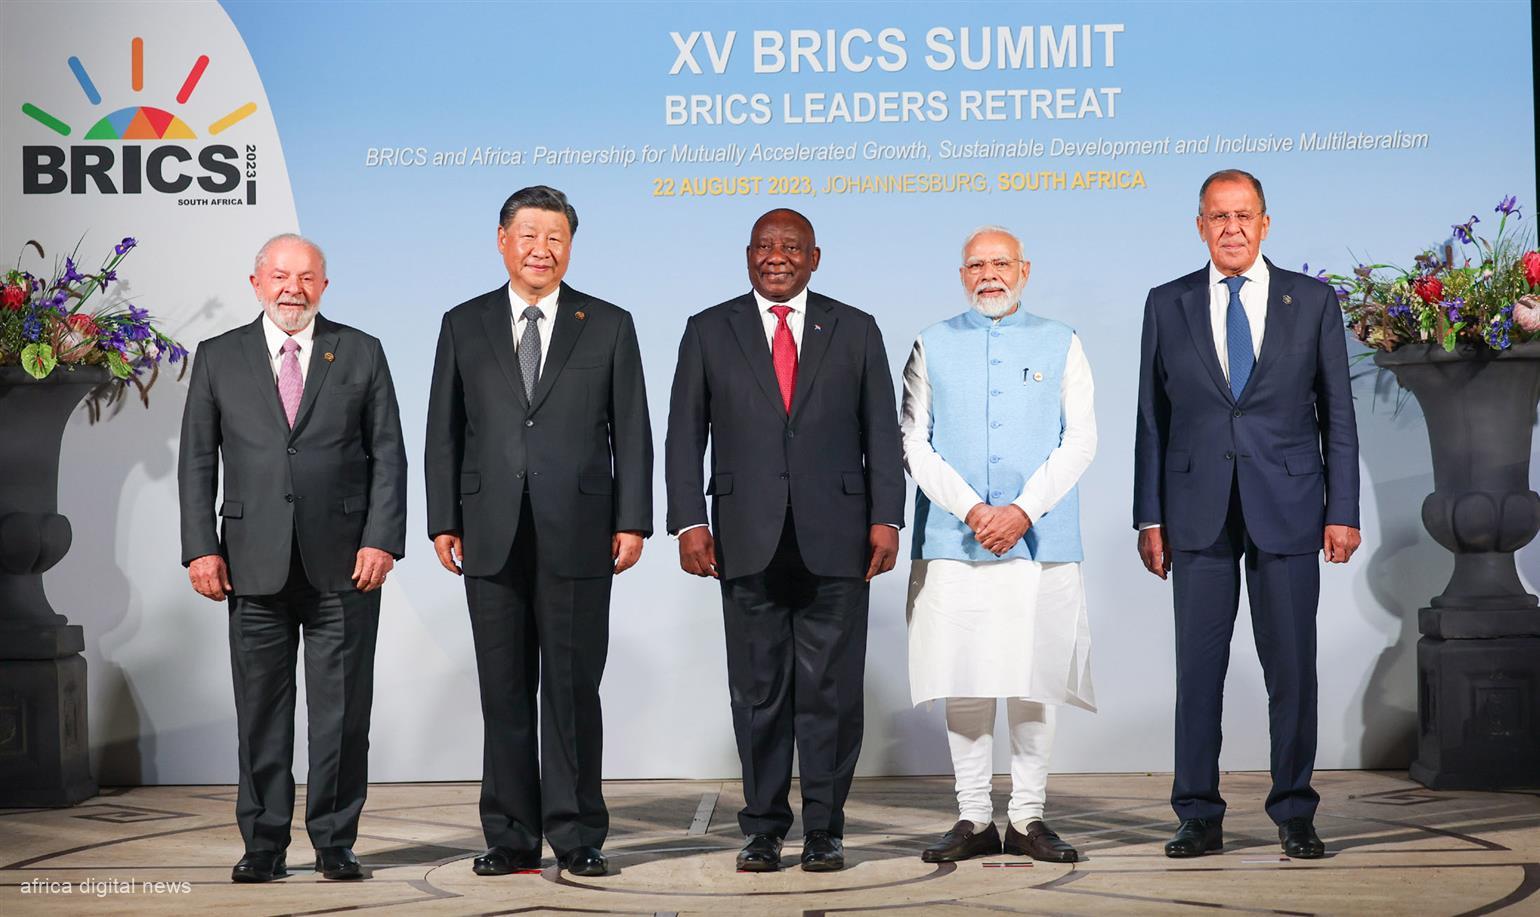 BRICS: Africa's Call For Fair Talks, Not Sacrifice